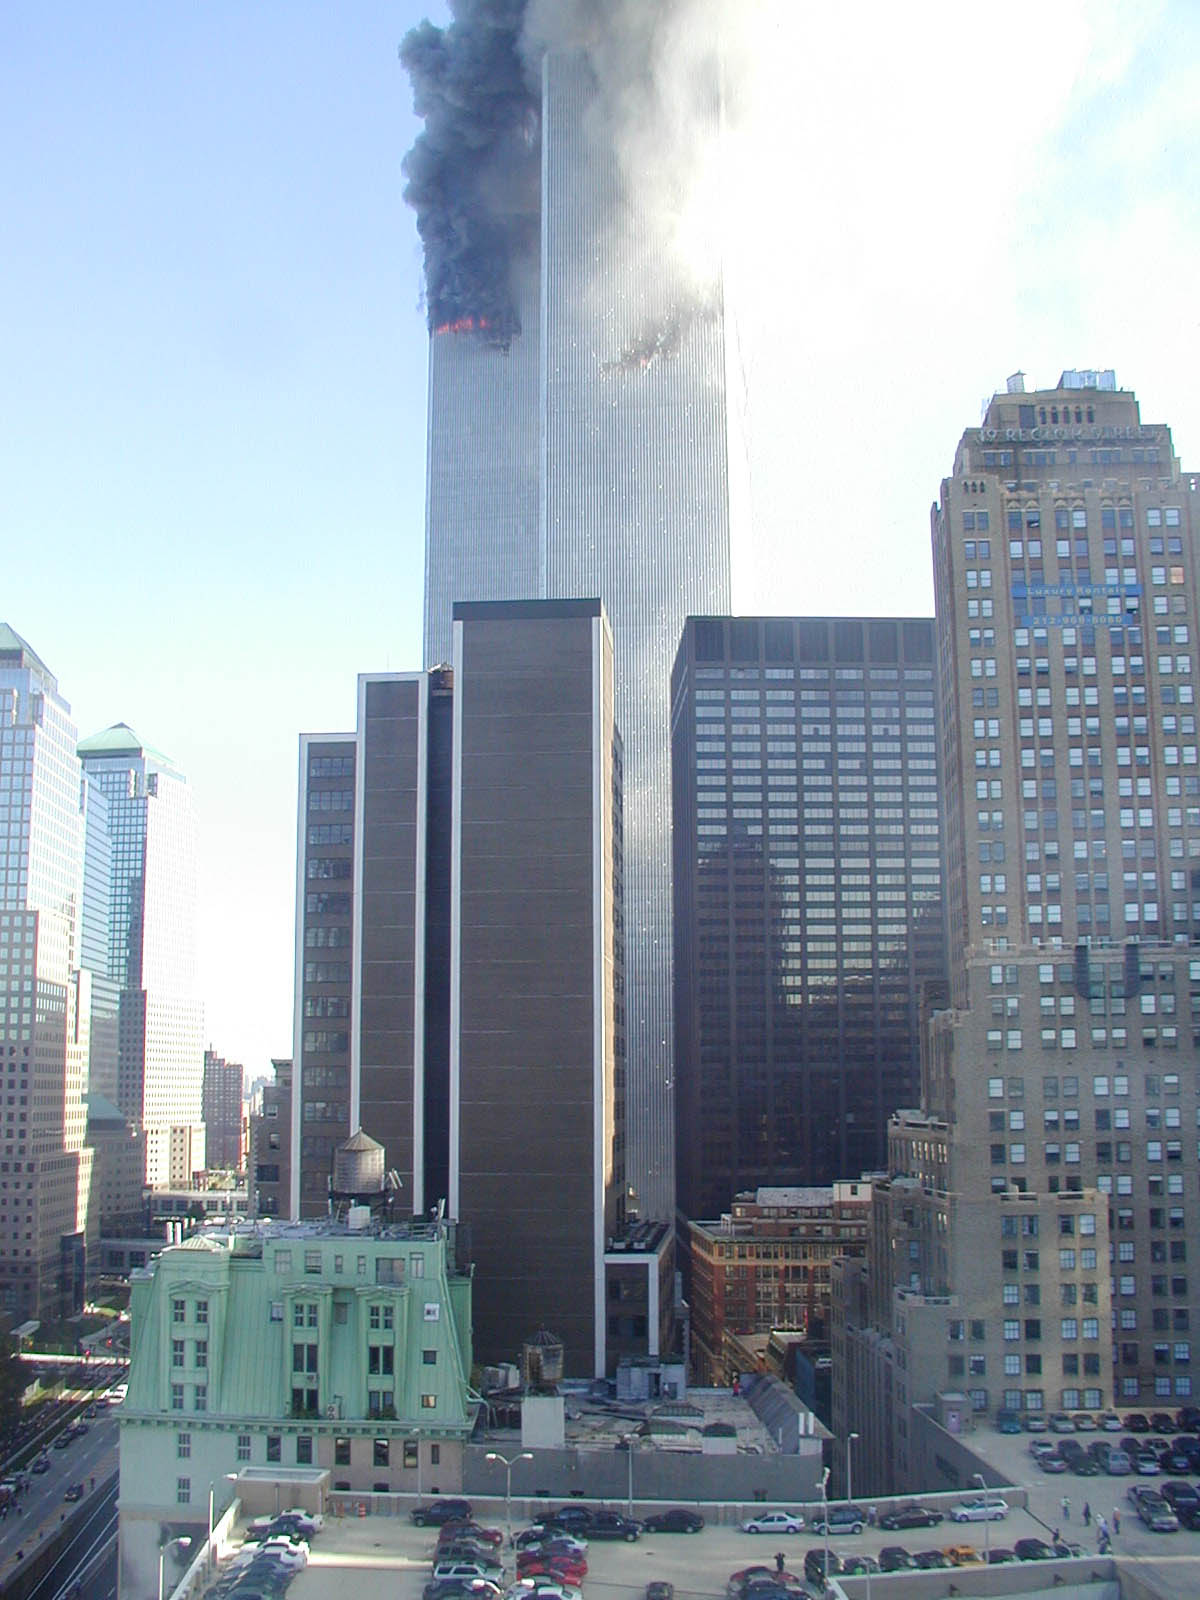 Близнецы сколько этажей. Башни ВТЦ В Нью-Йорке. Нью-Йорк Всемирный торговый центр 1999. ВТЦ Нью-Йорк башни Близнецы. Здания ВТЦ 3 В Нью Йорке башни Близнецы.